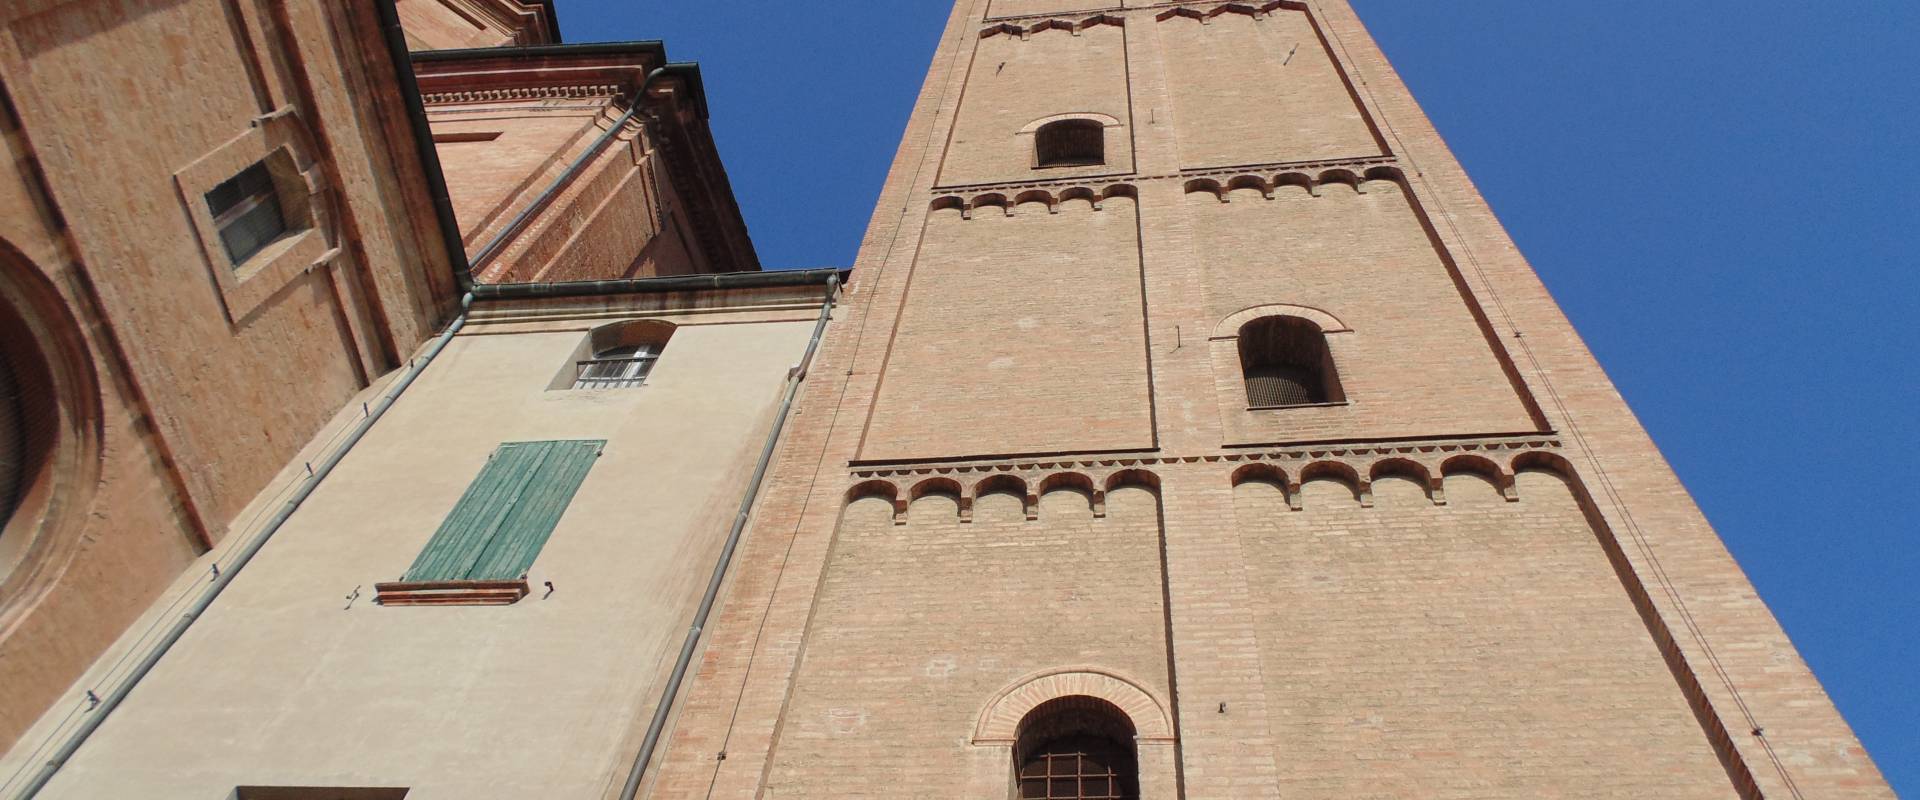 Chiesa cattedrale di San Cassiano (dettaglio campanile) photo by Maurolattuga